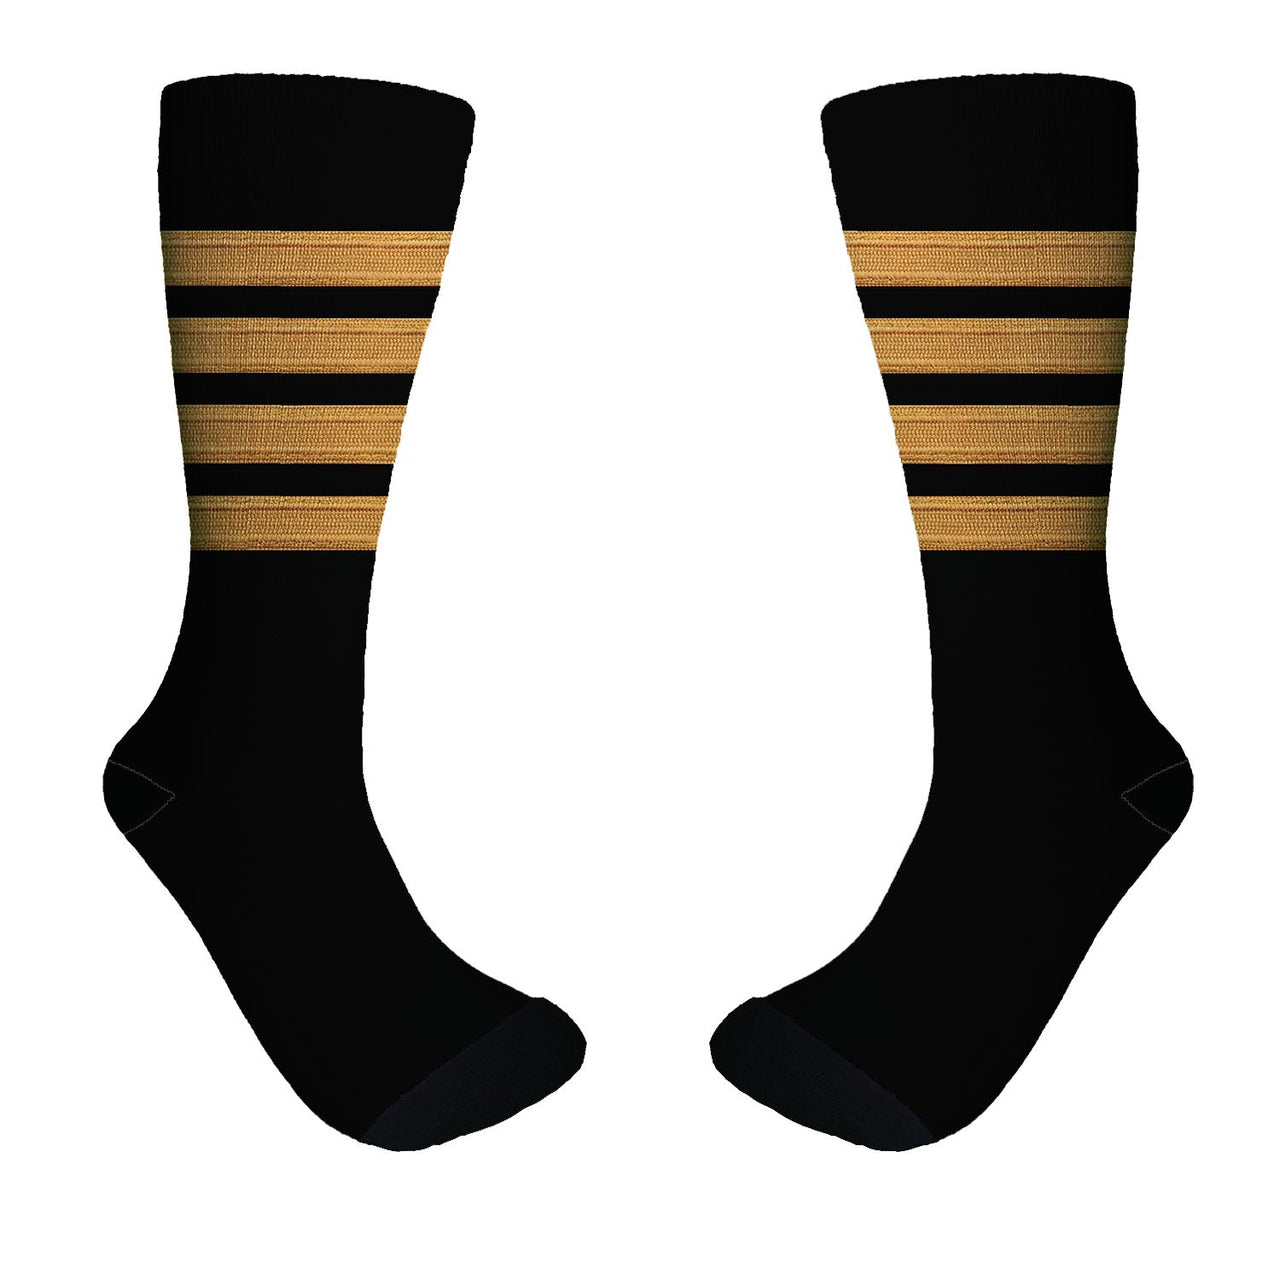 Pilot Epaulette (Golden) 4 Lines Designed Socks